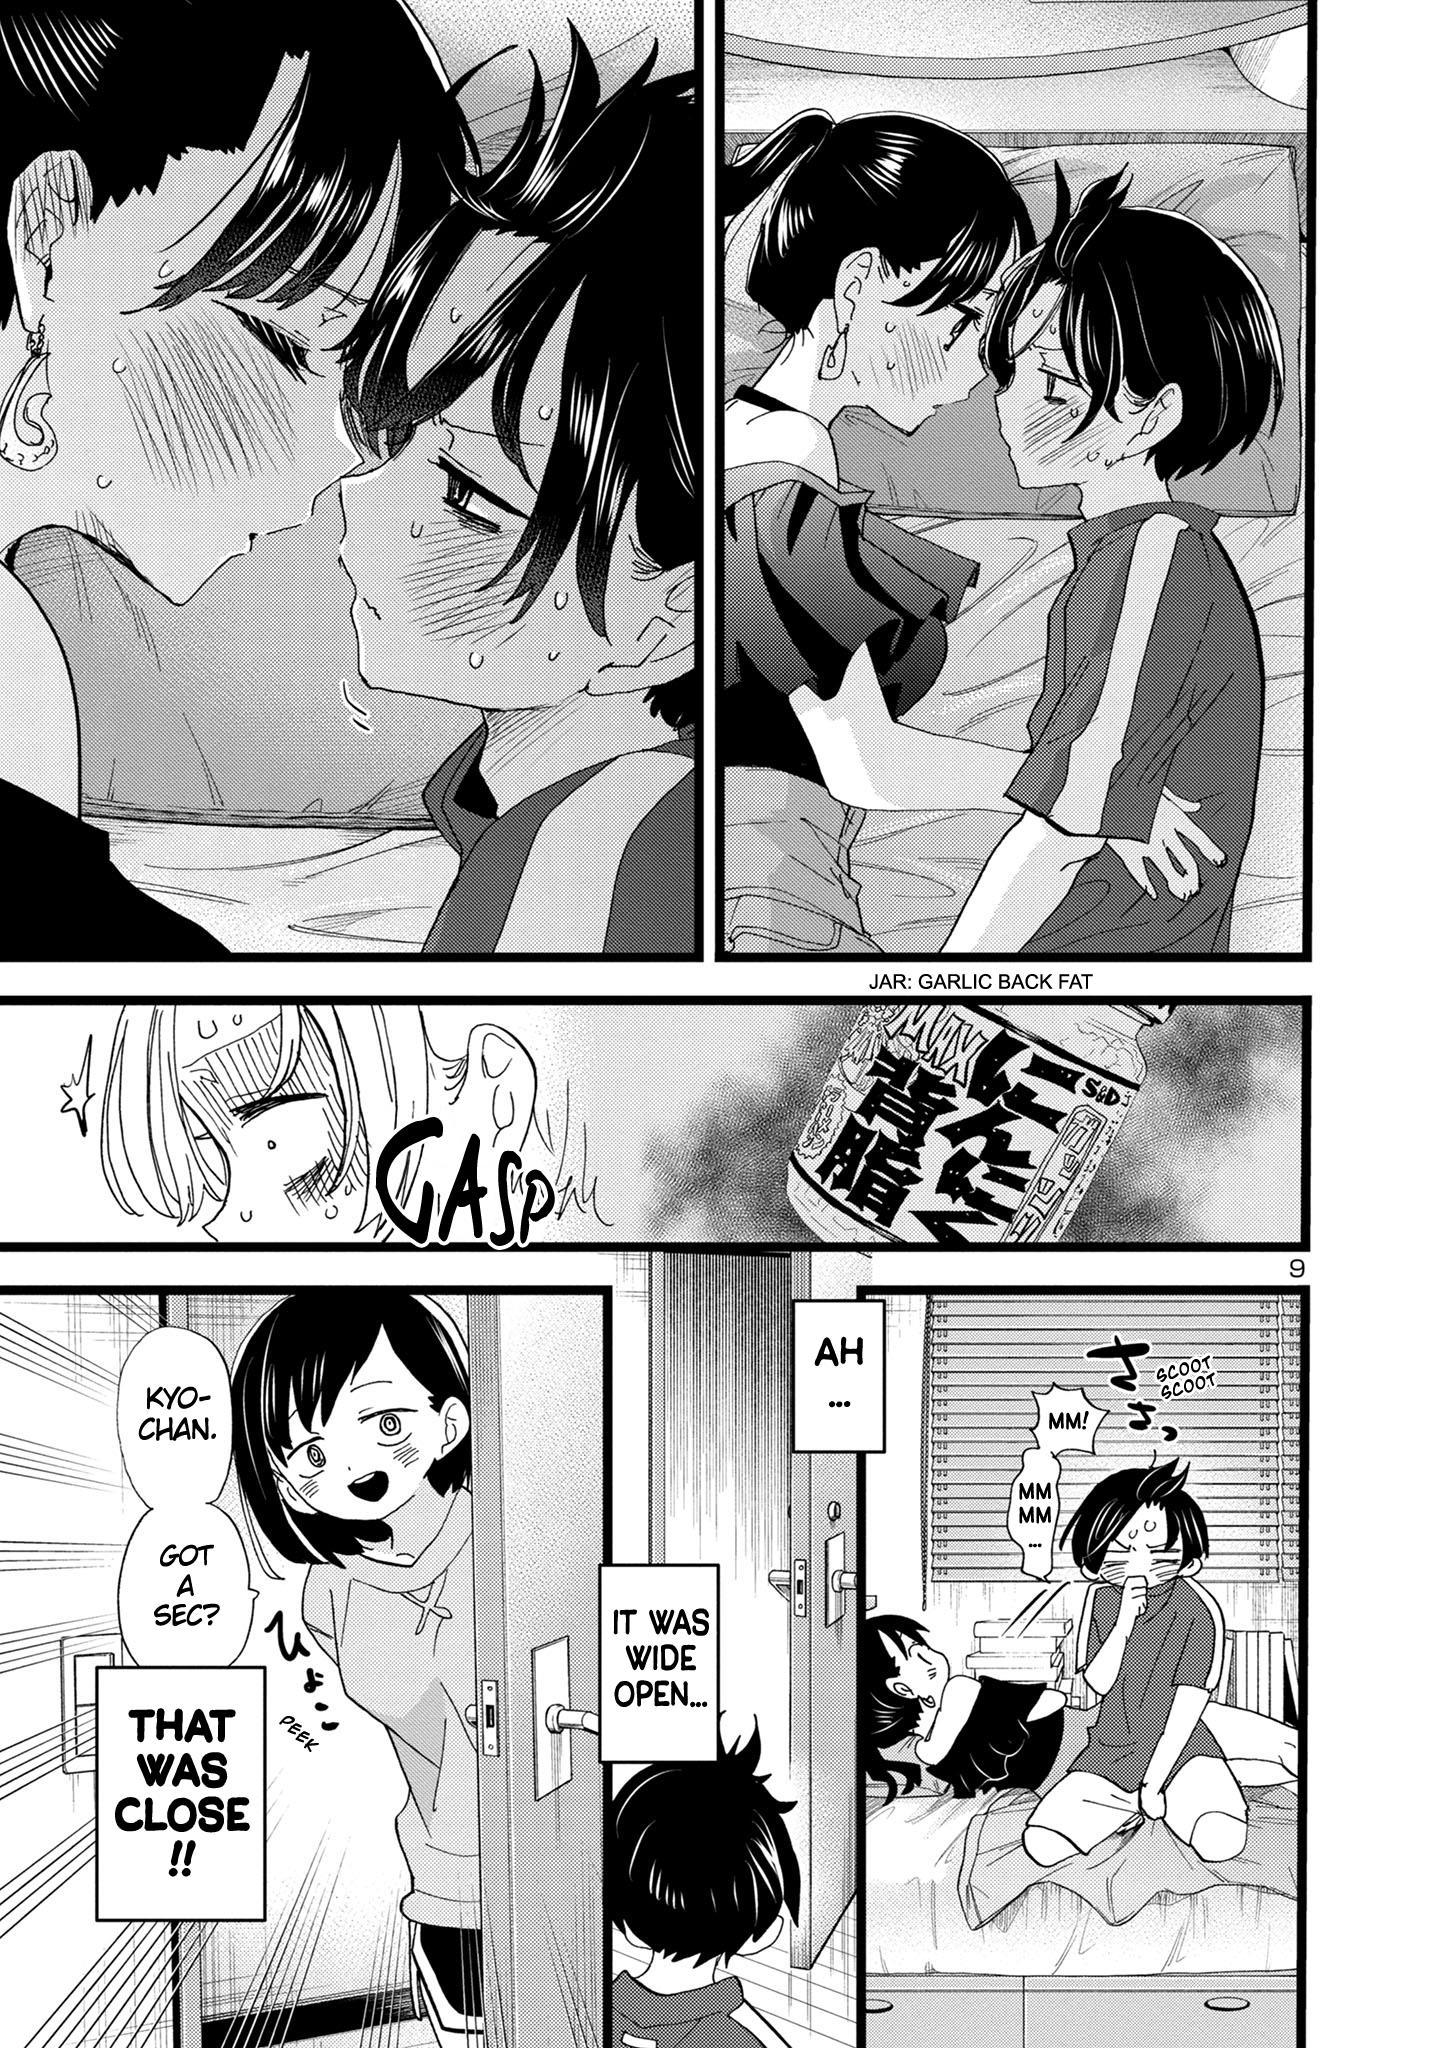 Boku no Kokoro no Yabai Yatsu Vol.10 Ch.131 Page 1 - Mangago